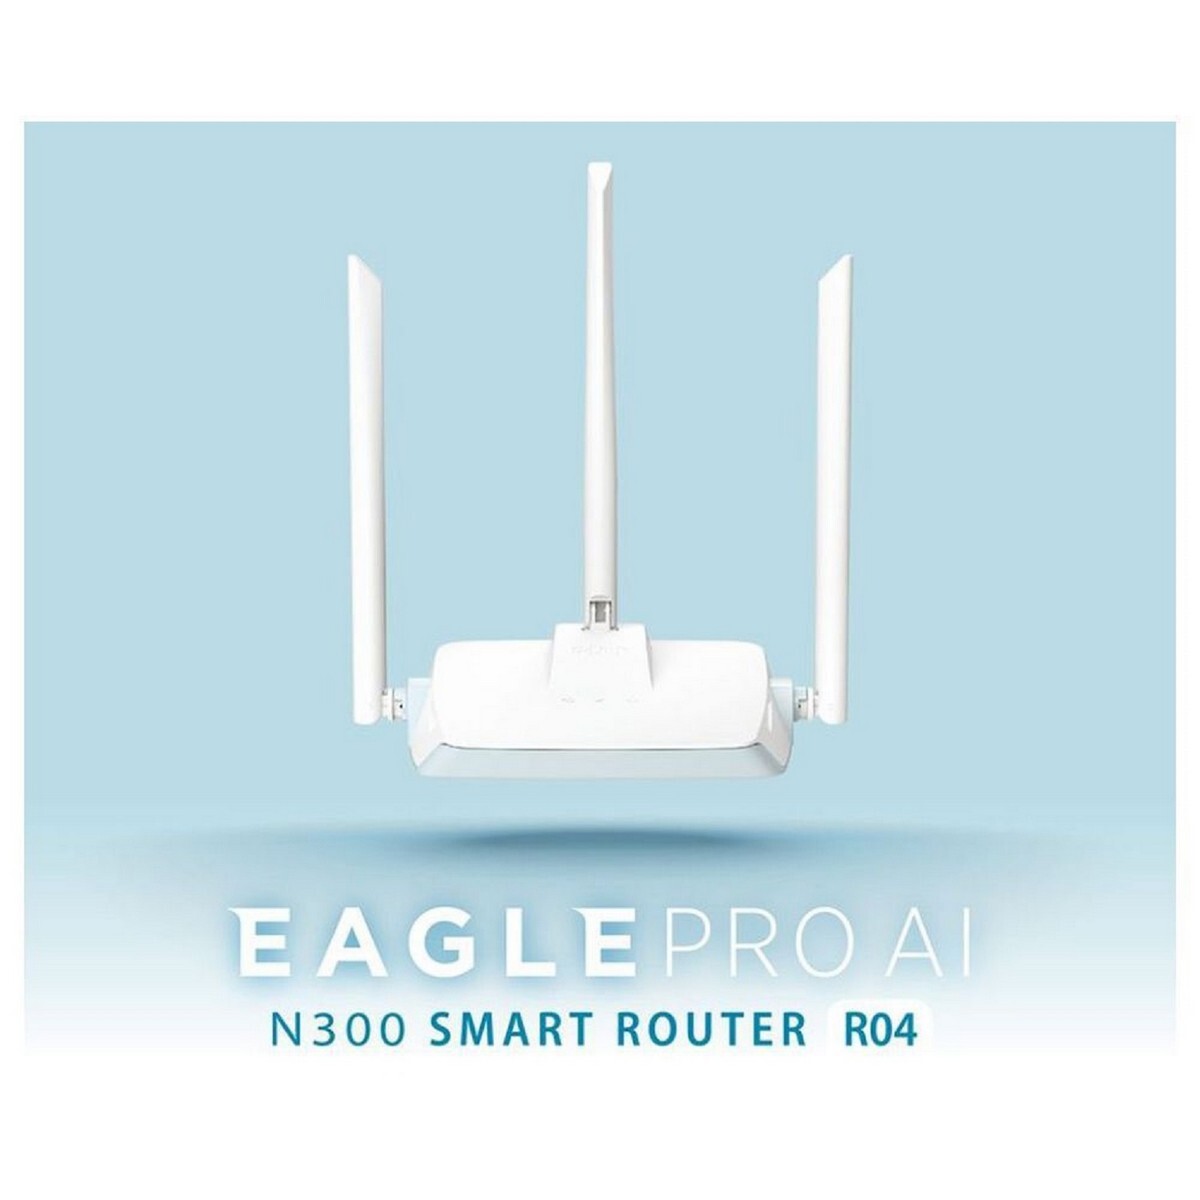 D-Link N300 Smart AI Router R04